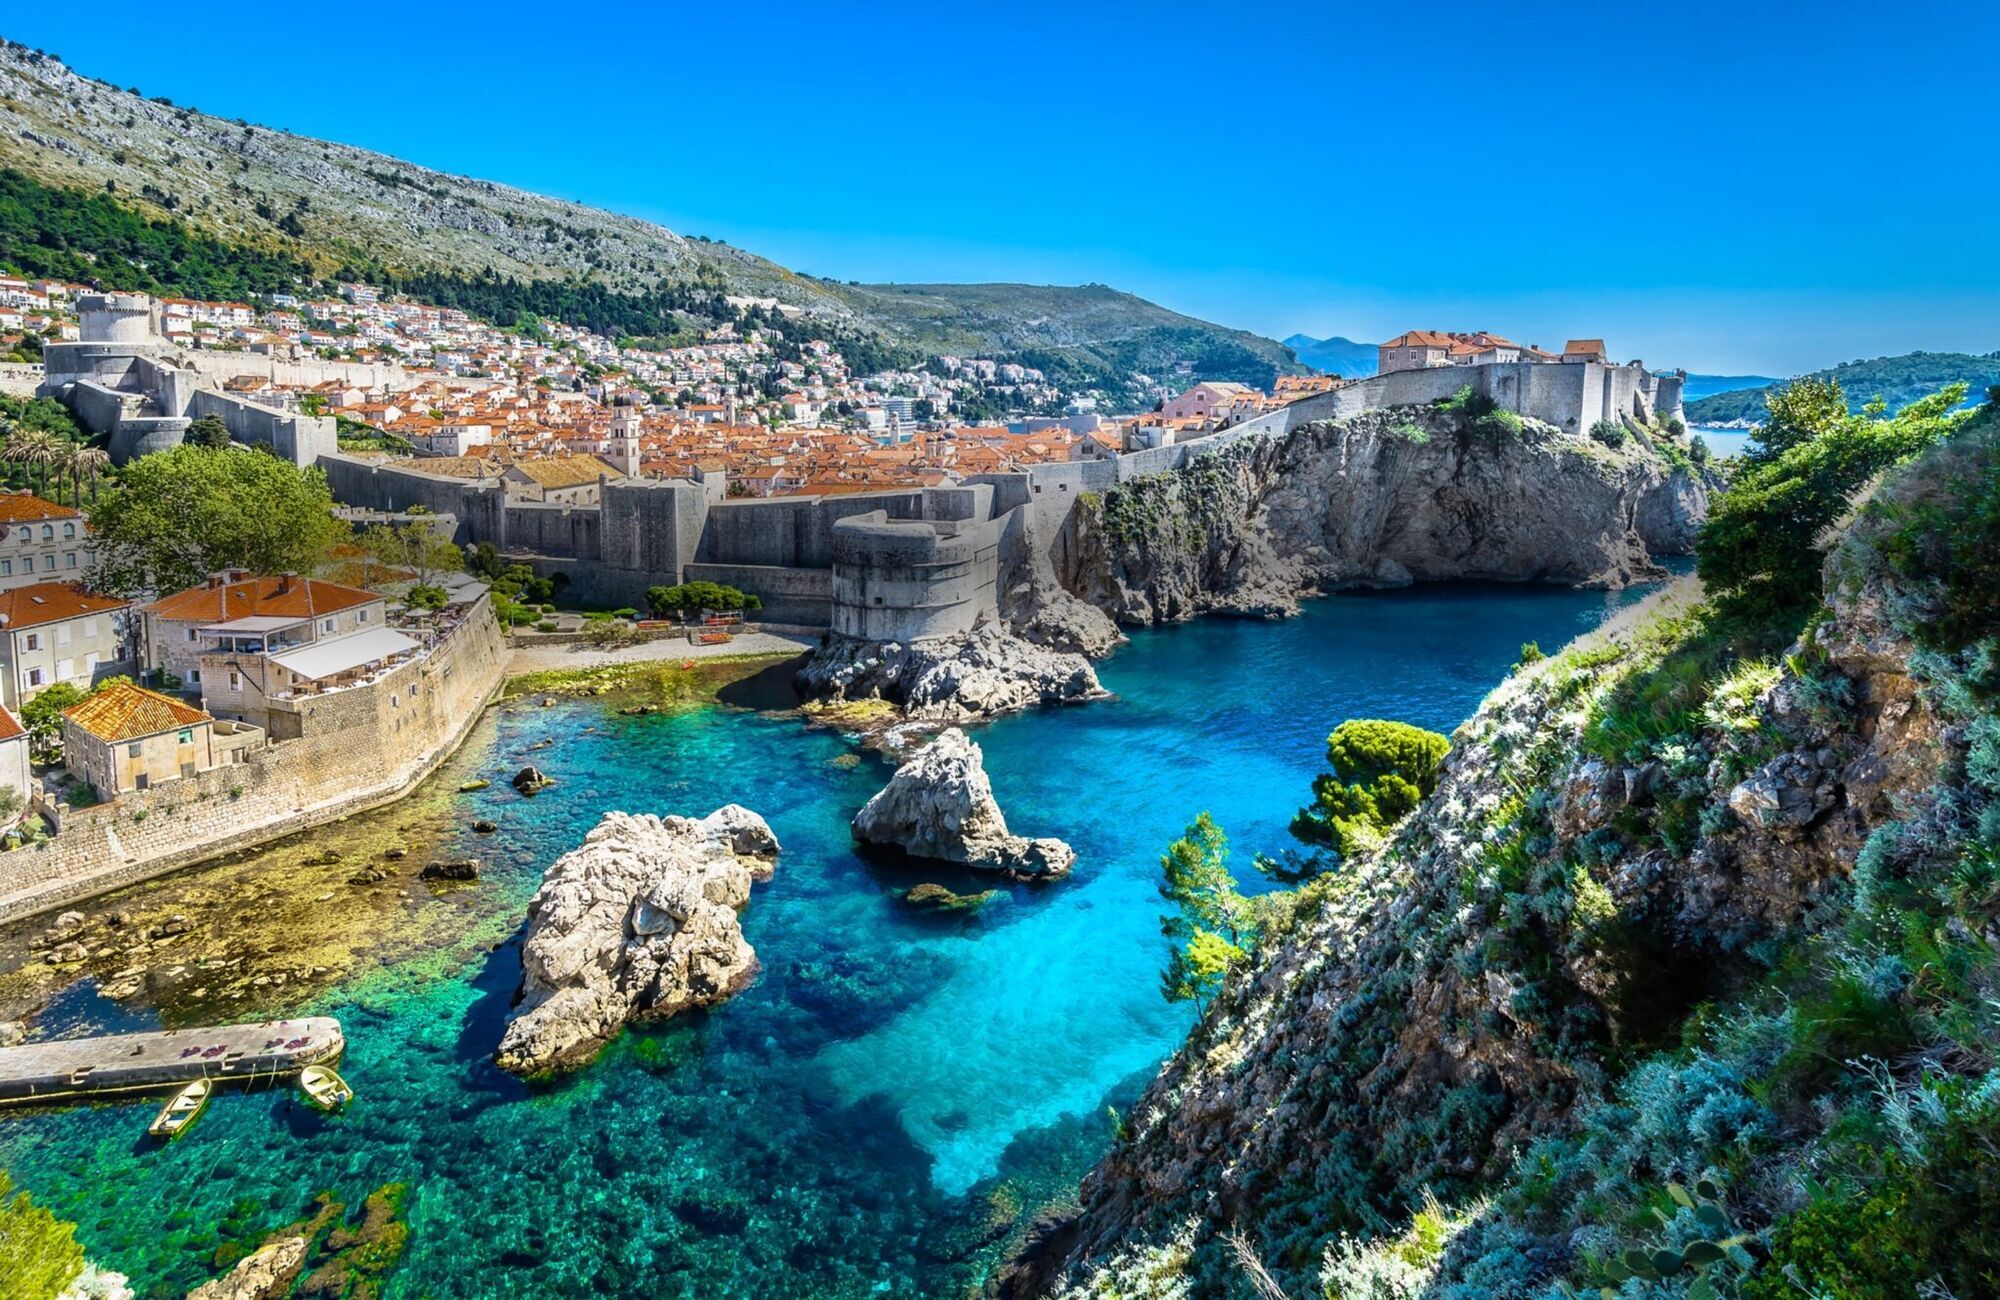 Хорватия вошла в топ-5 лучших стран с чистейшим морем